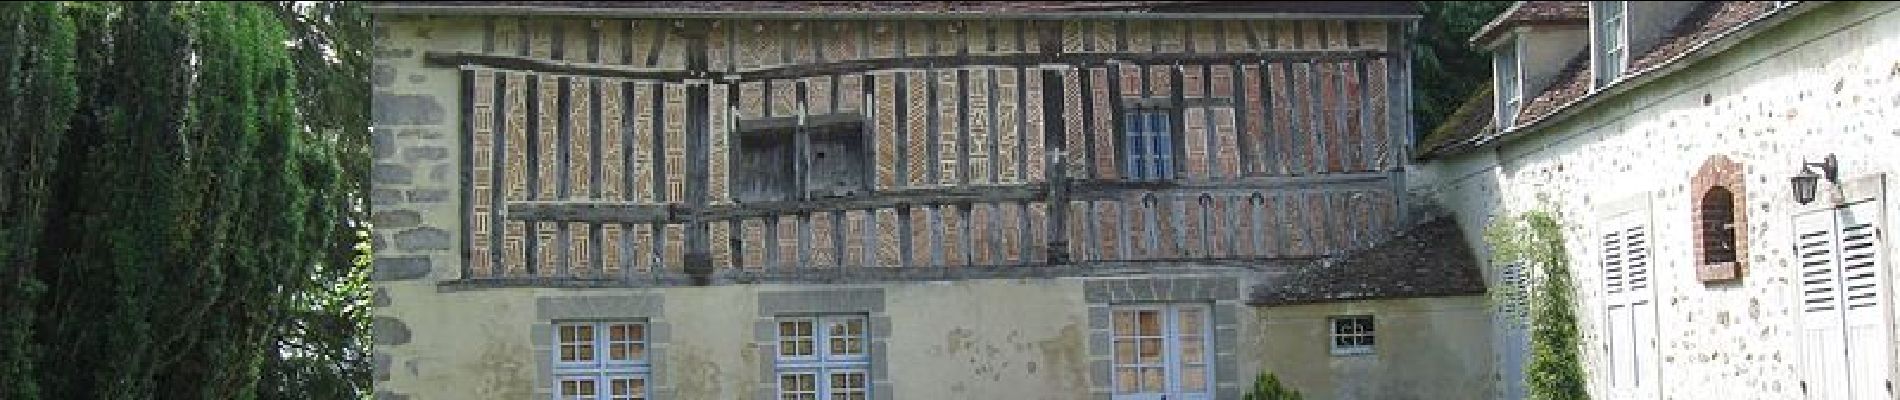 Point d'intérêt Chartronges - POI : Chartroncges : Maison à colombage classée - Photo